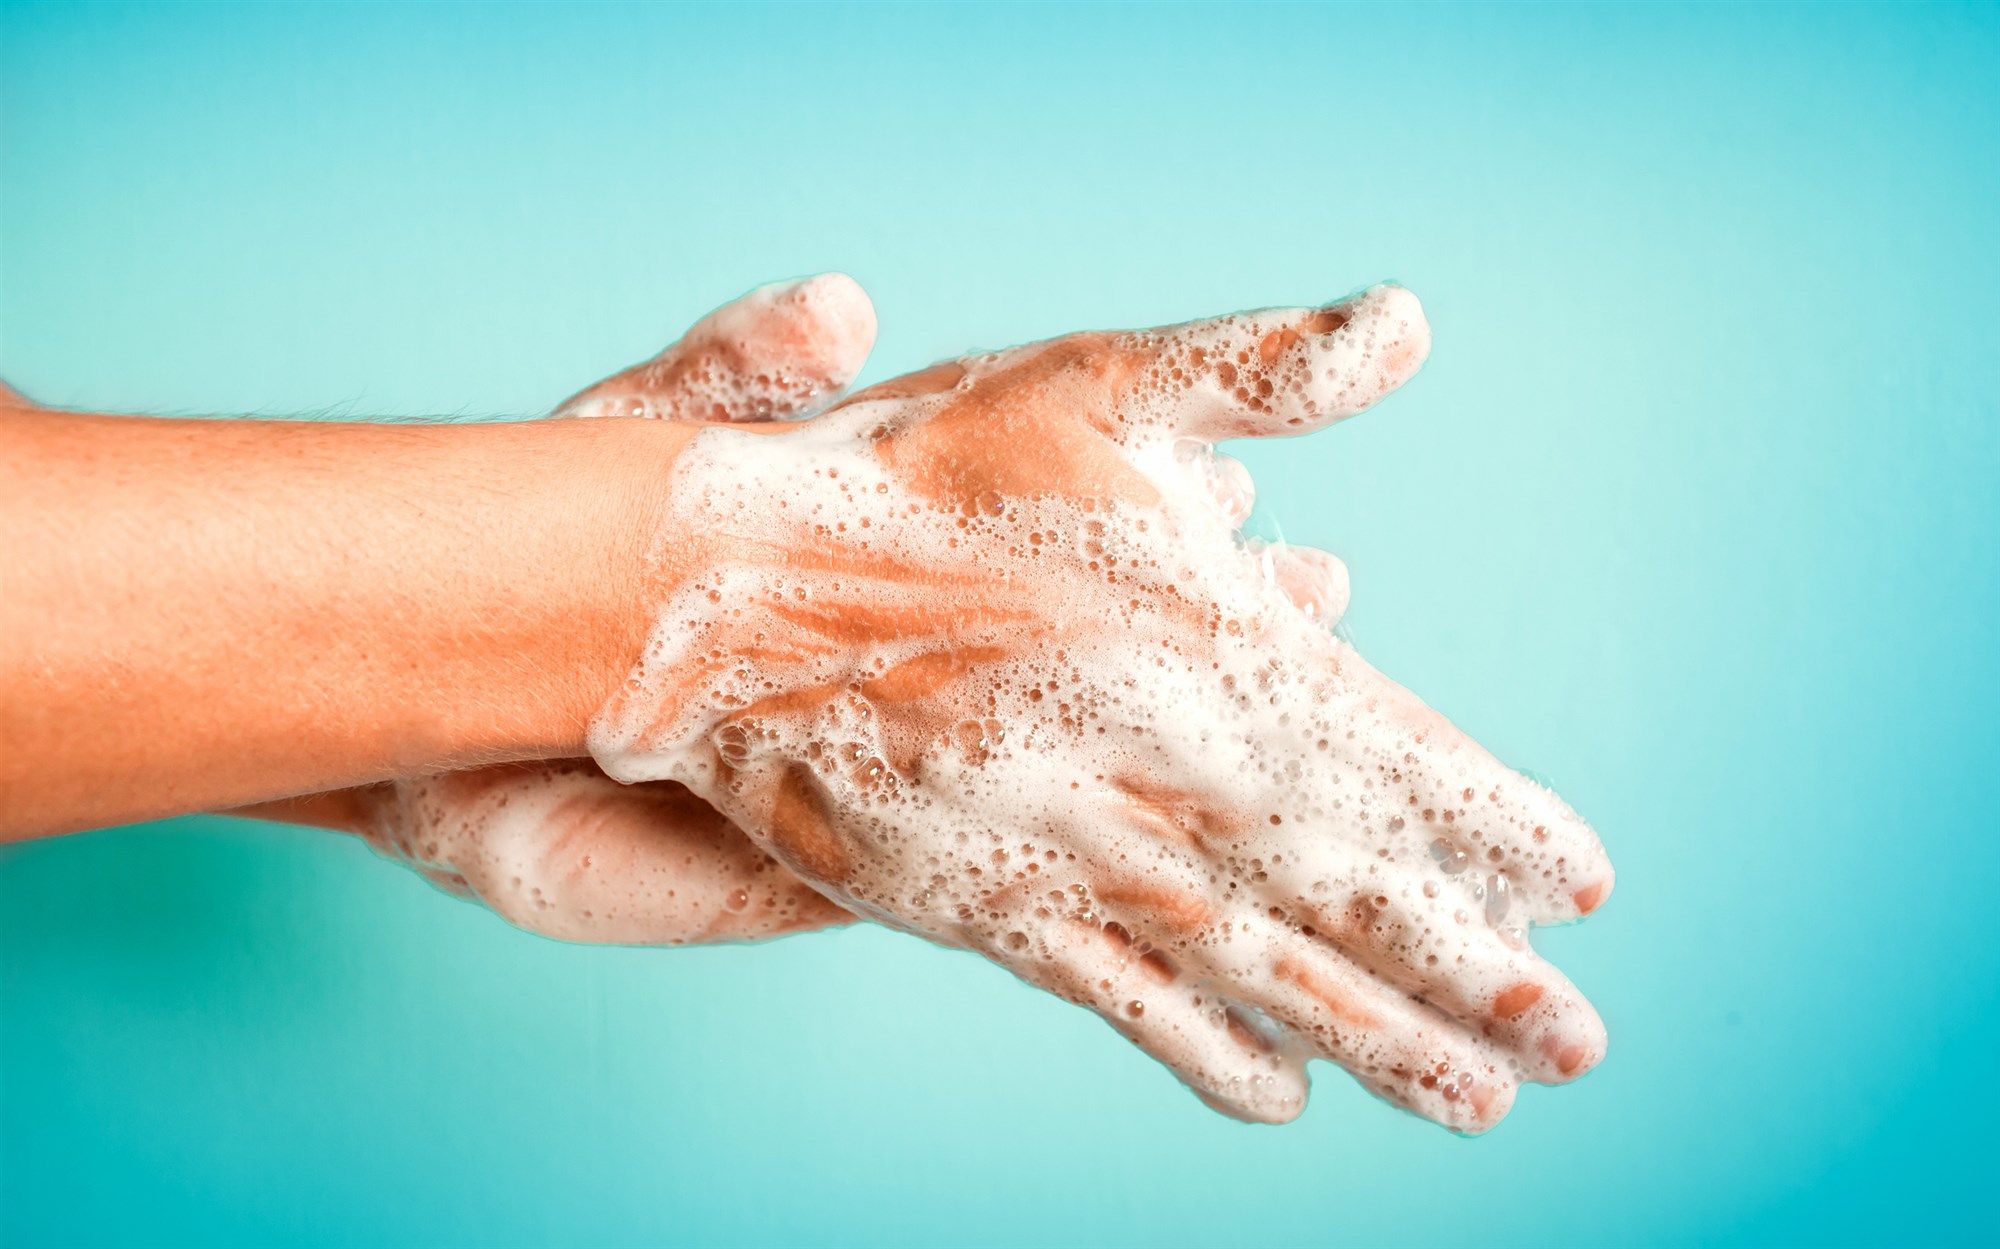 9. Cuci tangan setelah menyentuh benda apa pun